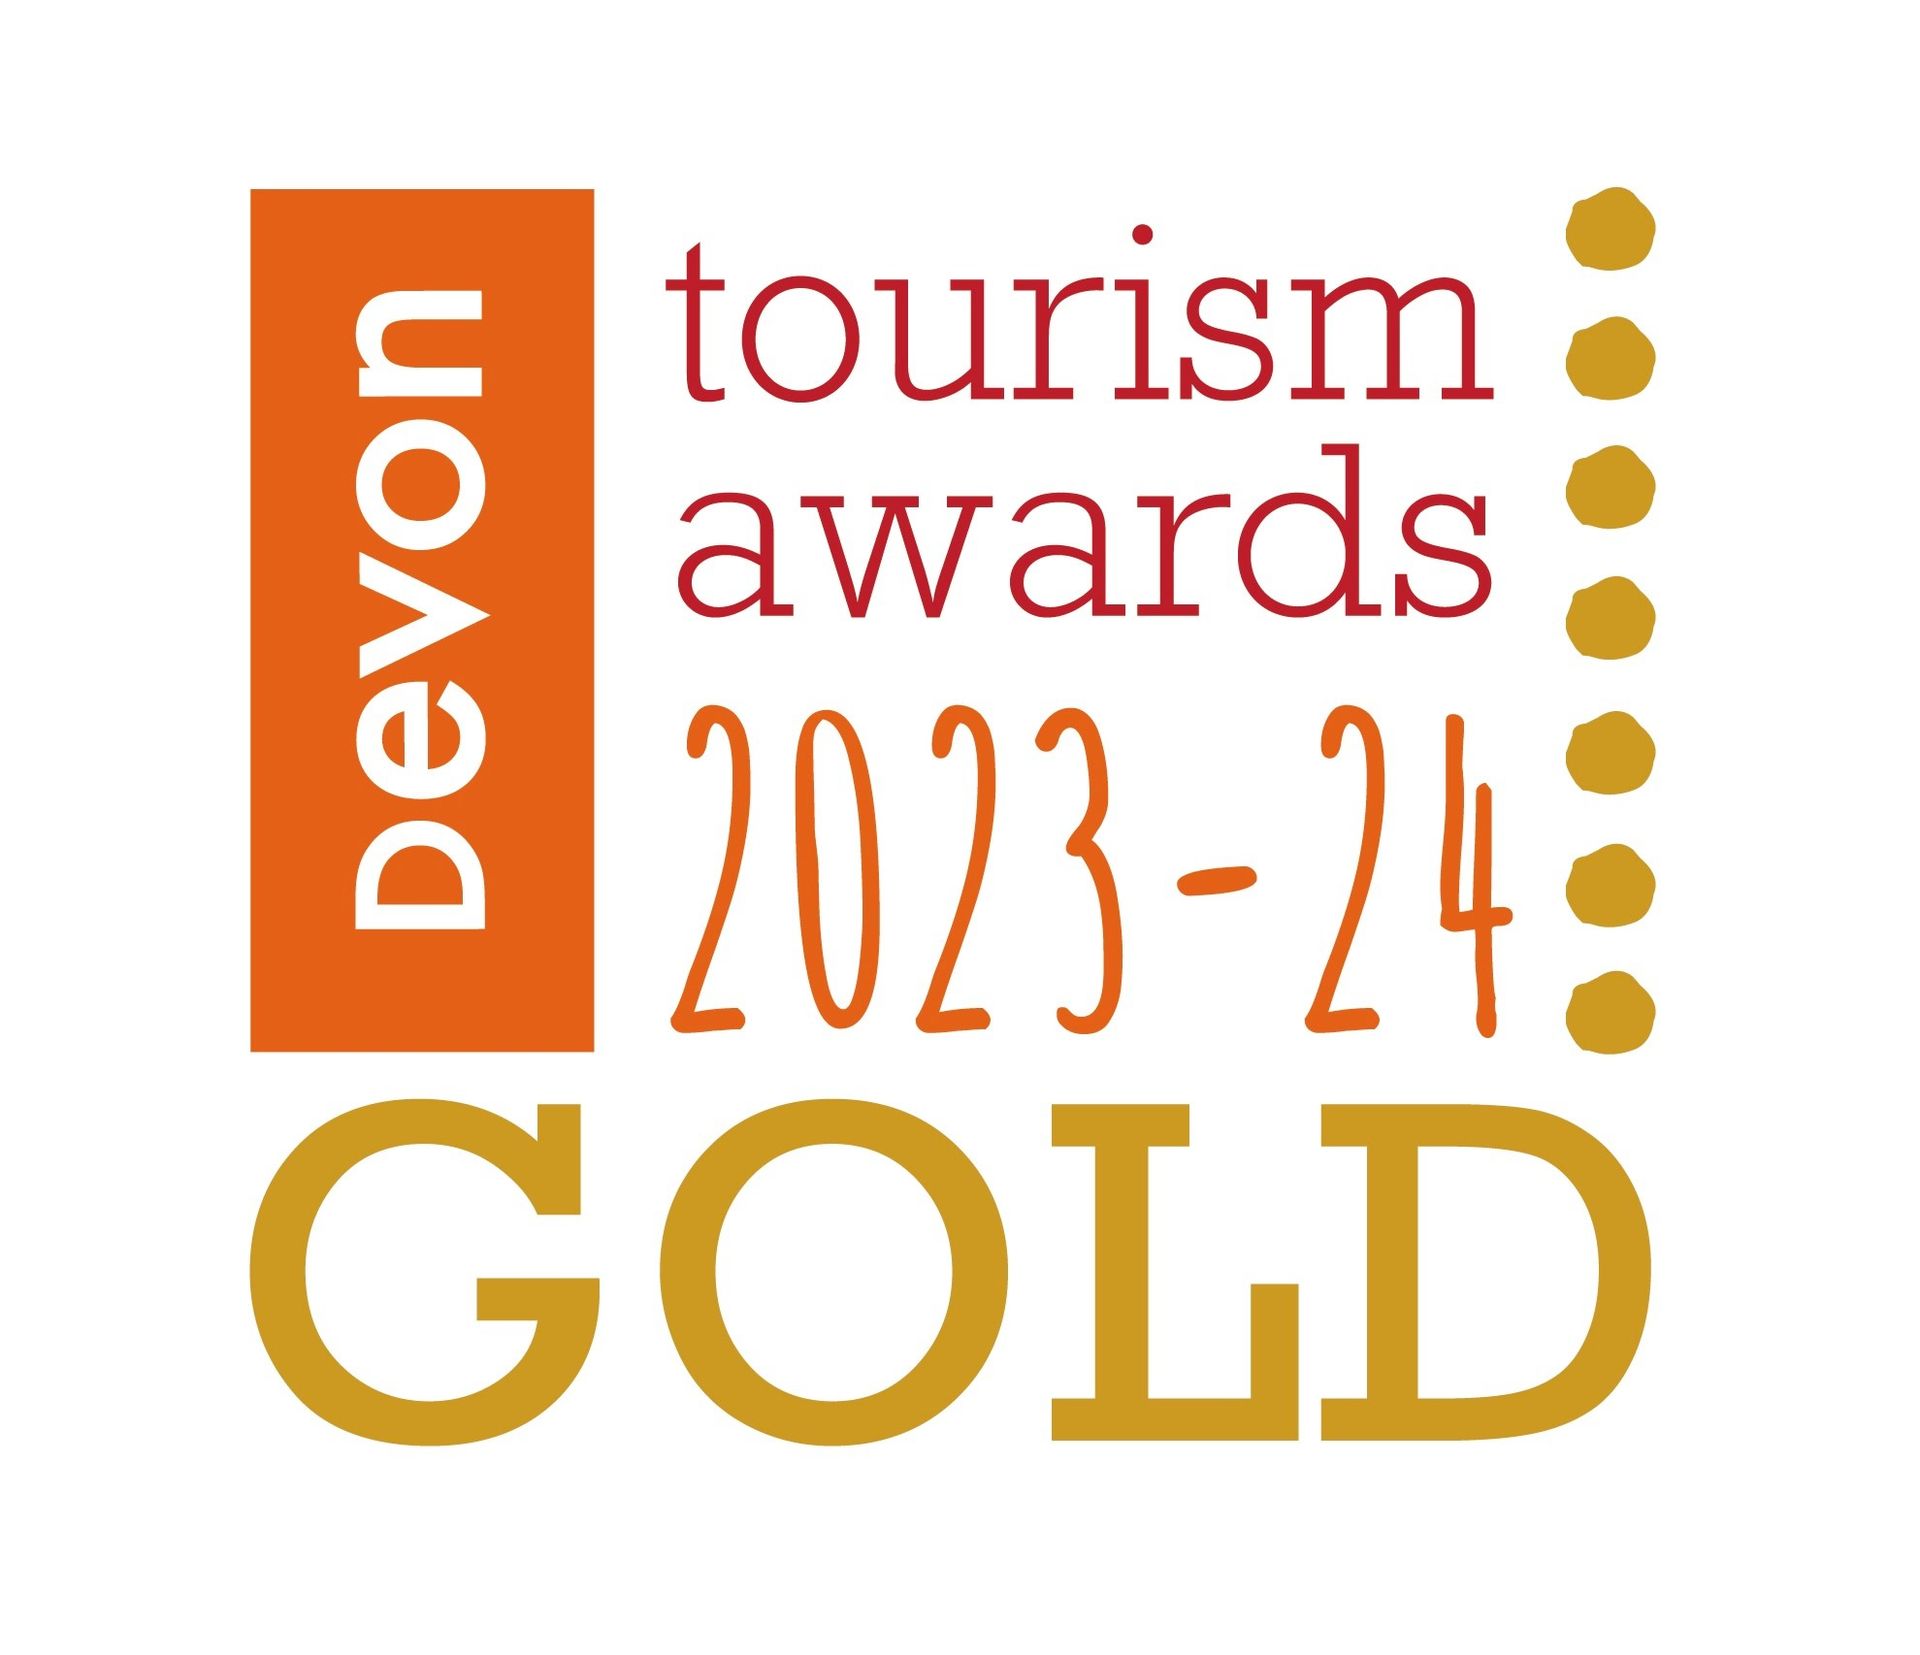 a logo for devon tourism awards 2023-24 gold